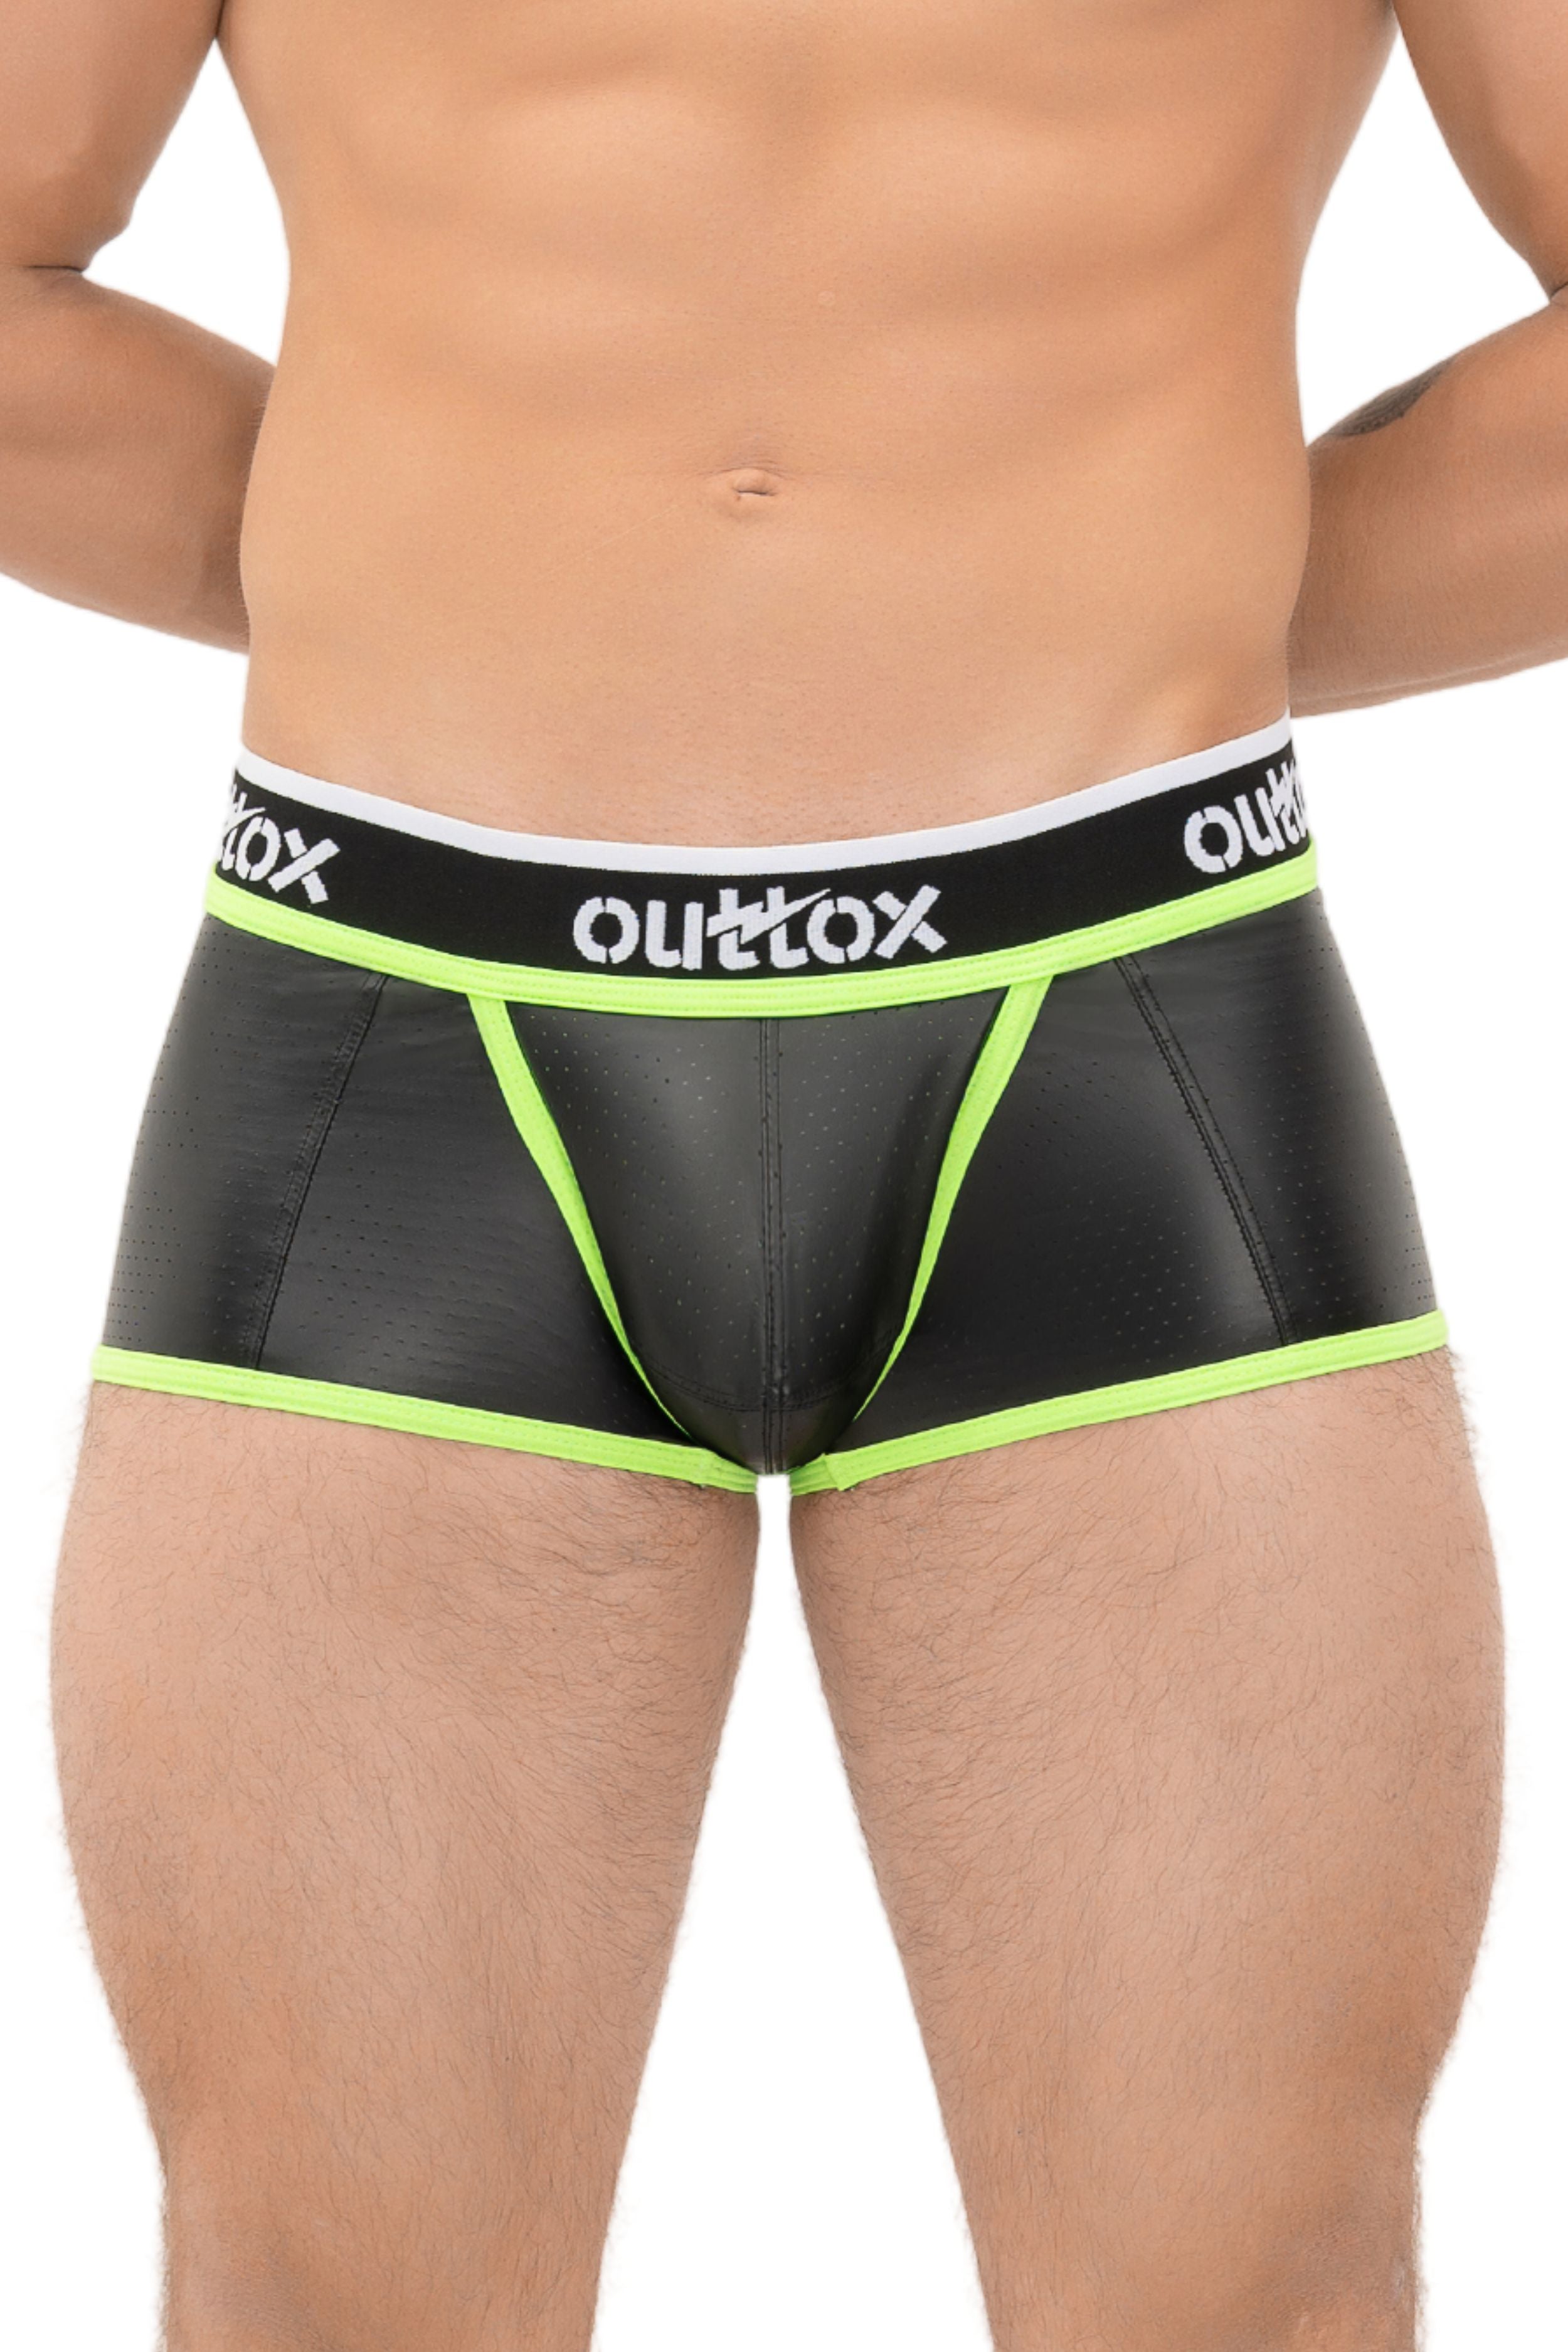 Outtox. Gewickelte Shorts mit Druckknopfverschluss. Schwarz+Grün „Neon“